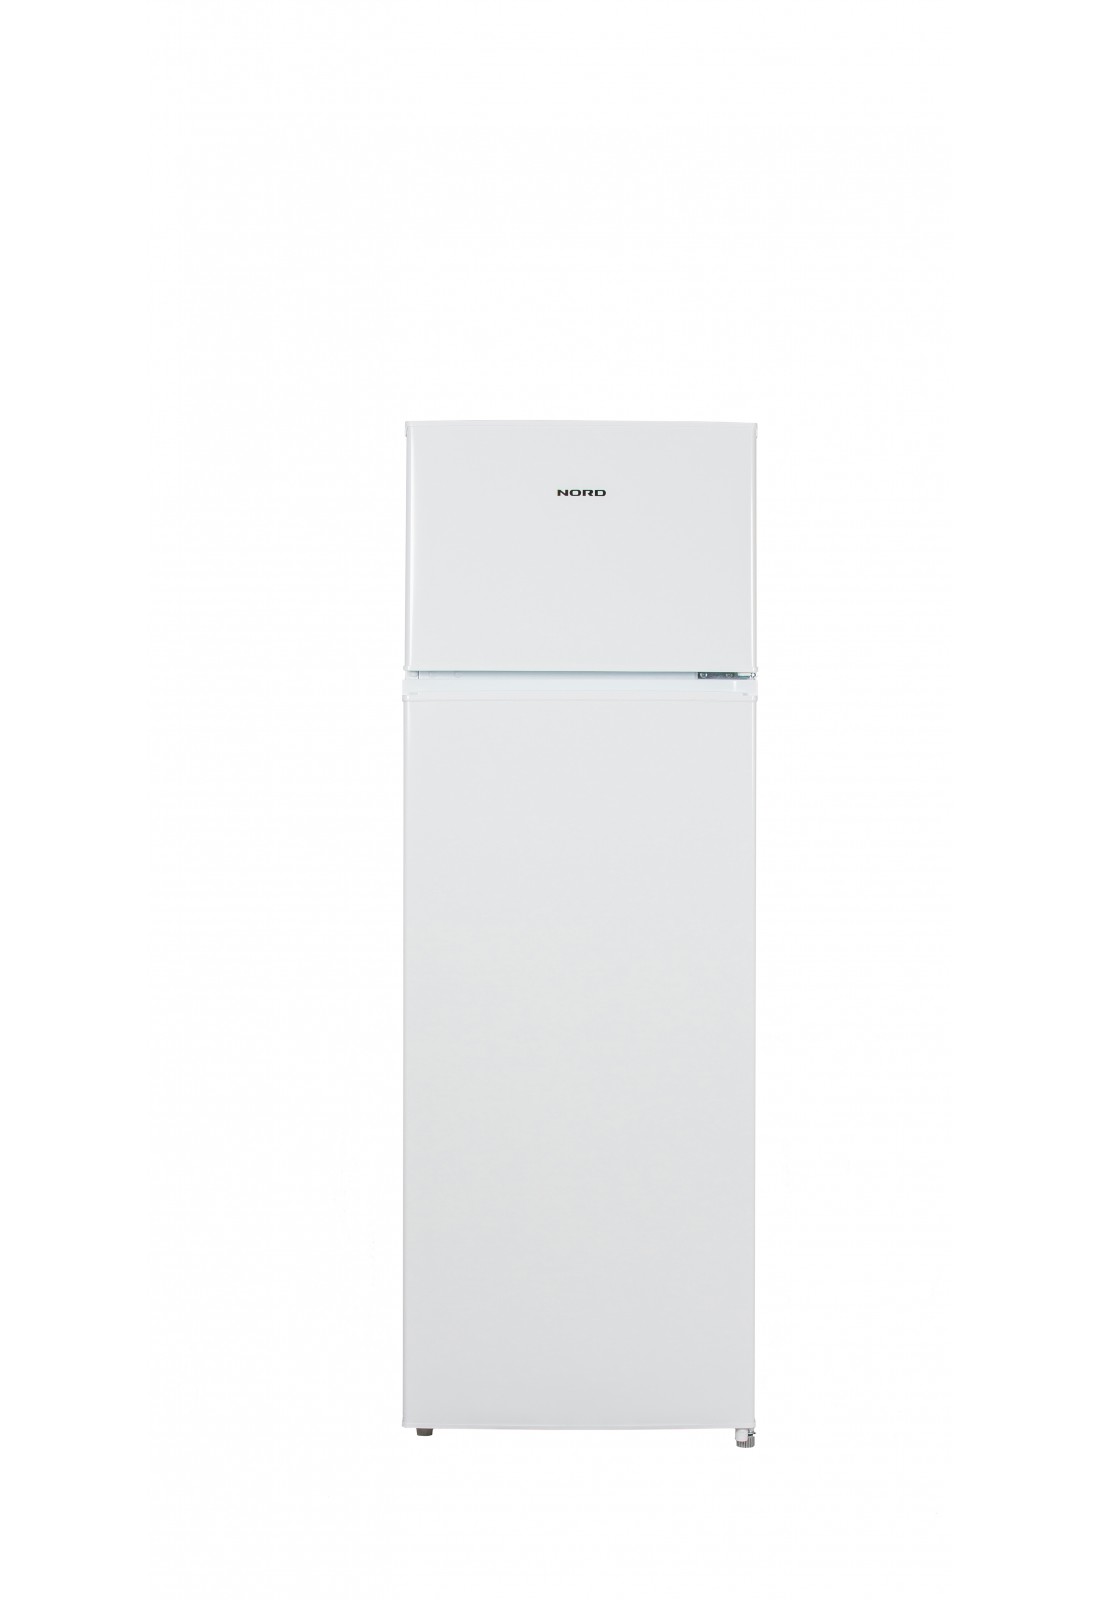 Дверь холодильной камеры холодильника NORD T 275